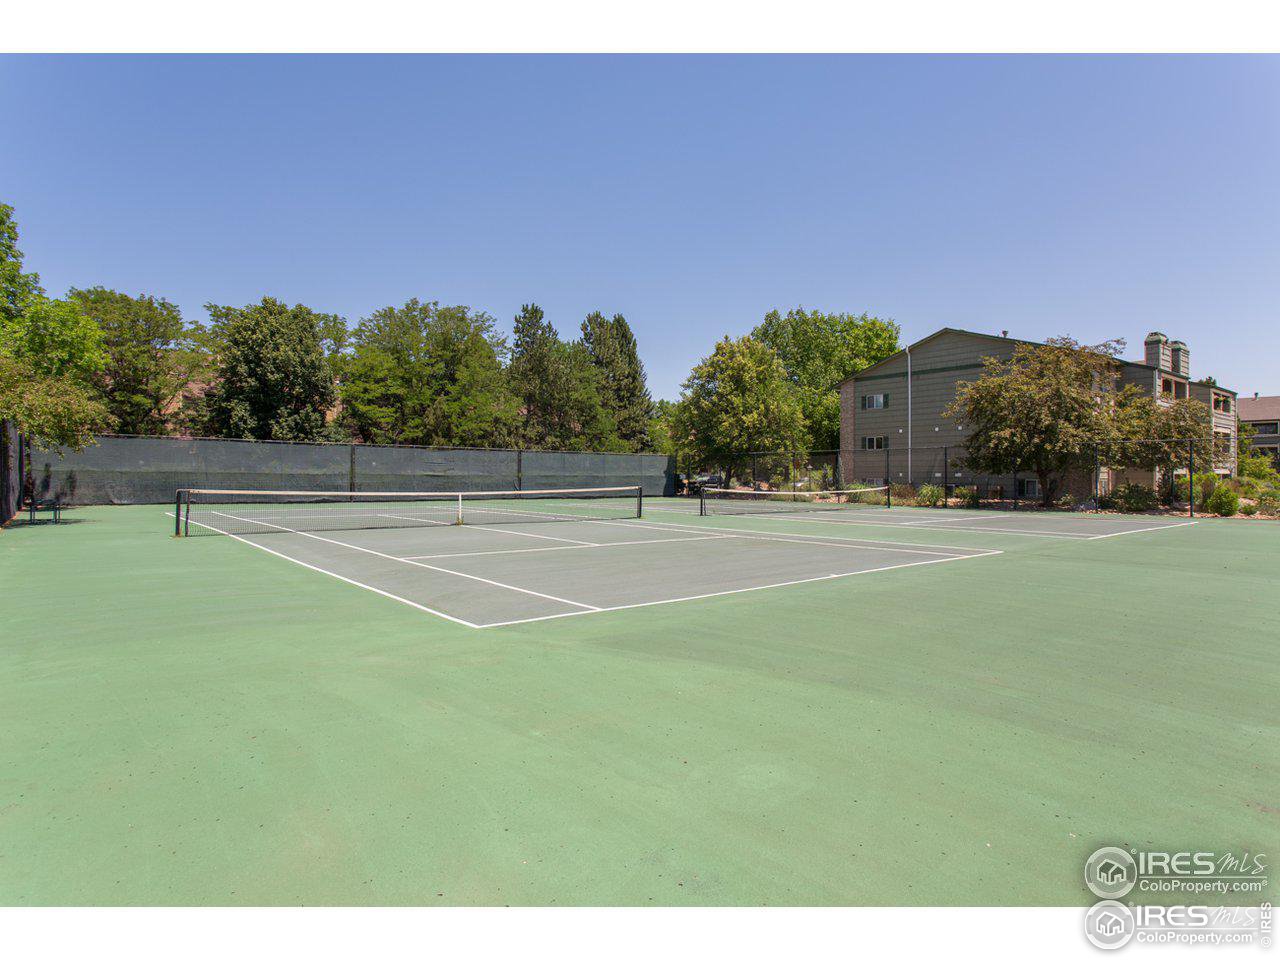 HOA tennis courts